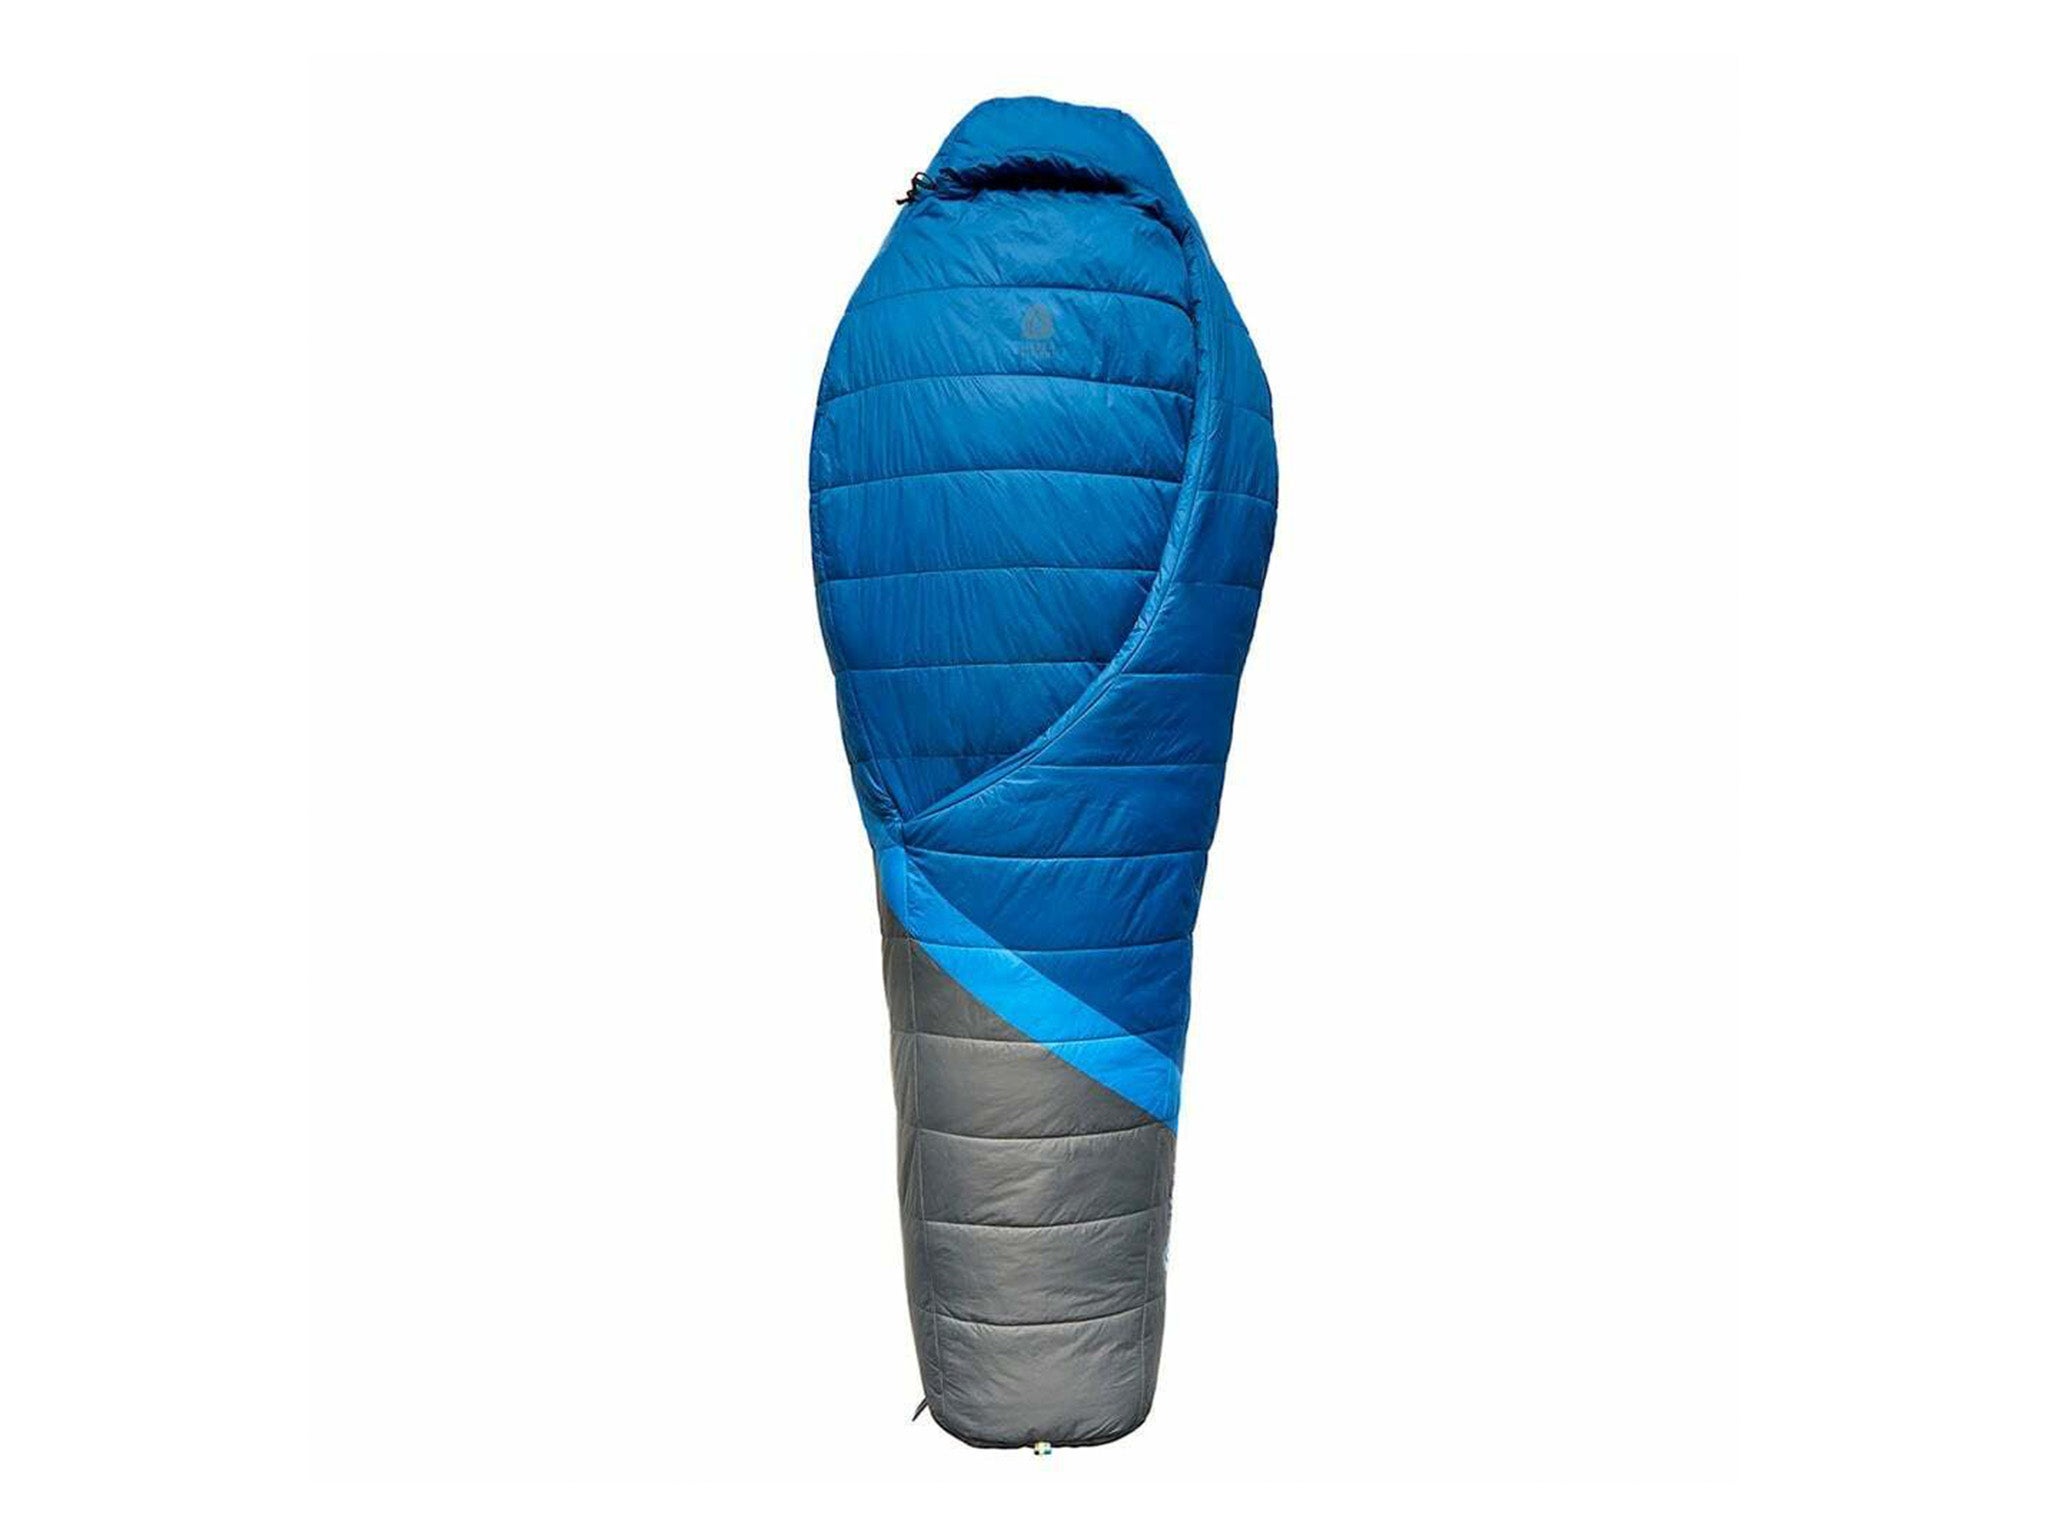 Sierra Designs night cap 20 sleeping bag